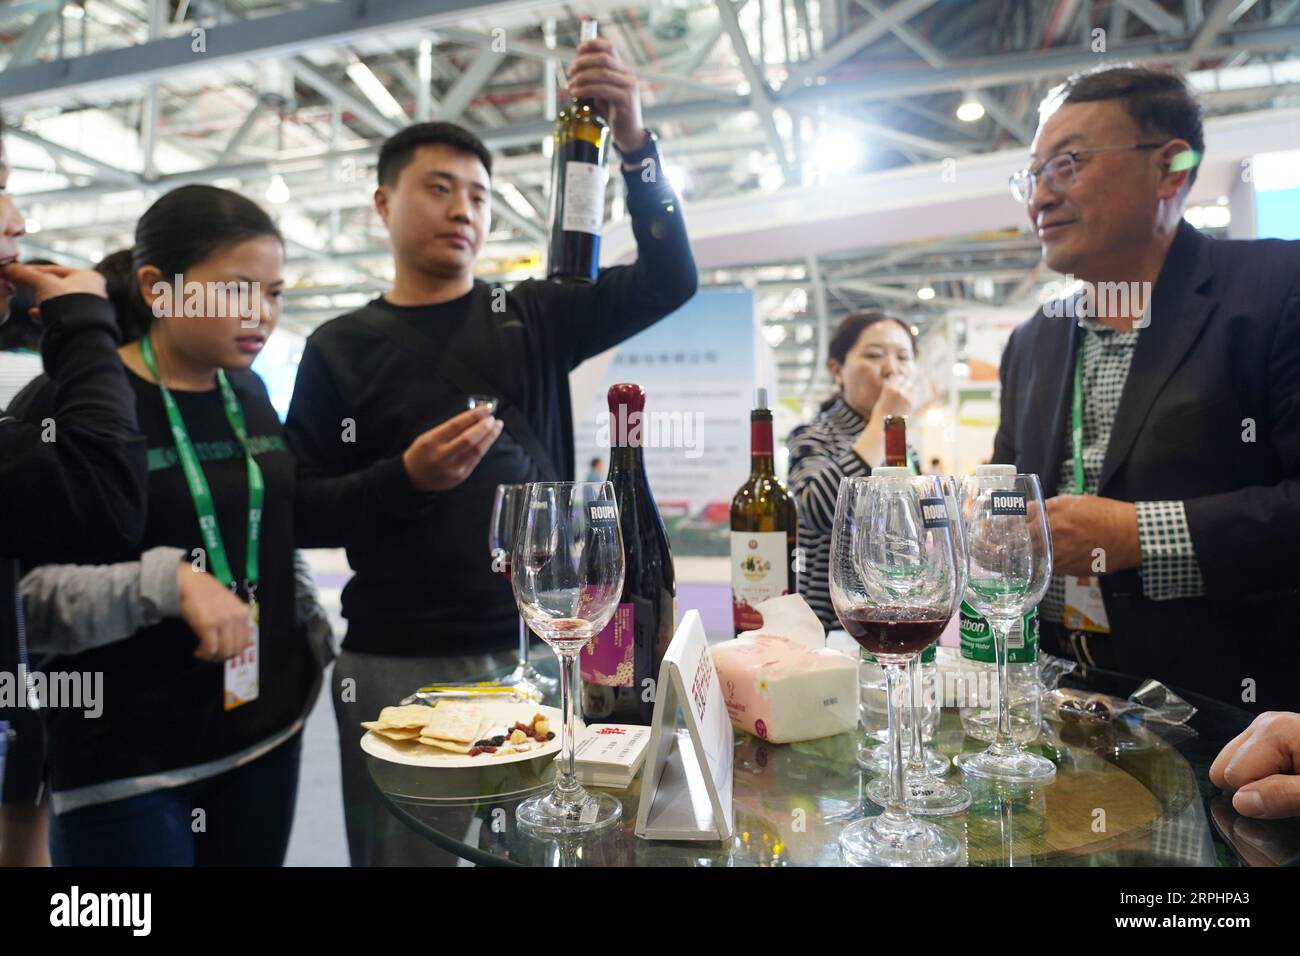 191115 -- NANCHANG, 15 novembre 2019 -- les visiteurs goûtent le vin dans la zone d'exposition de Ningxia de la 17e Foire internationale agricole chinoise CATF à Nanchang, capitale de la province de Jiangxi de l'est de la Chine, le 15 novembre 2019. Le 17e CATF a débuté vendredi à Nanchang avec environ 8 000 exposants présents à la foire. CHINA-JIANGXI-NANCHANG-CATF CN ZhouxMi PUBLICATIONxNOTxINxCHN Banque D'Images